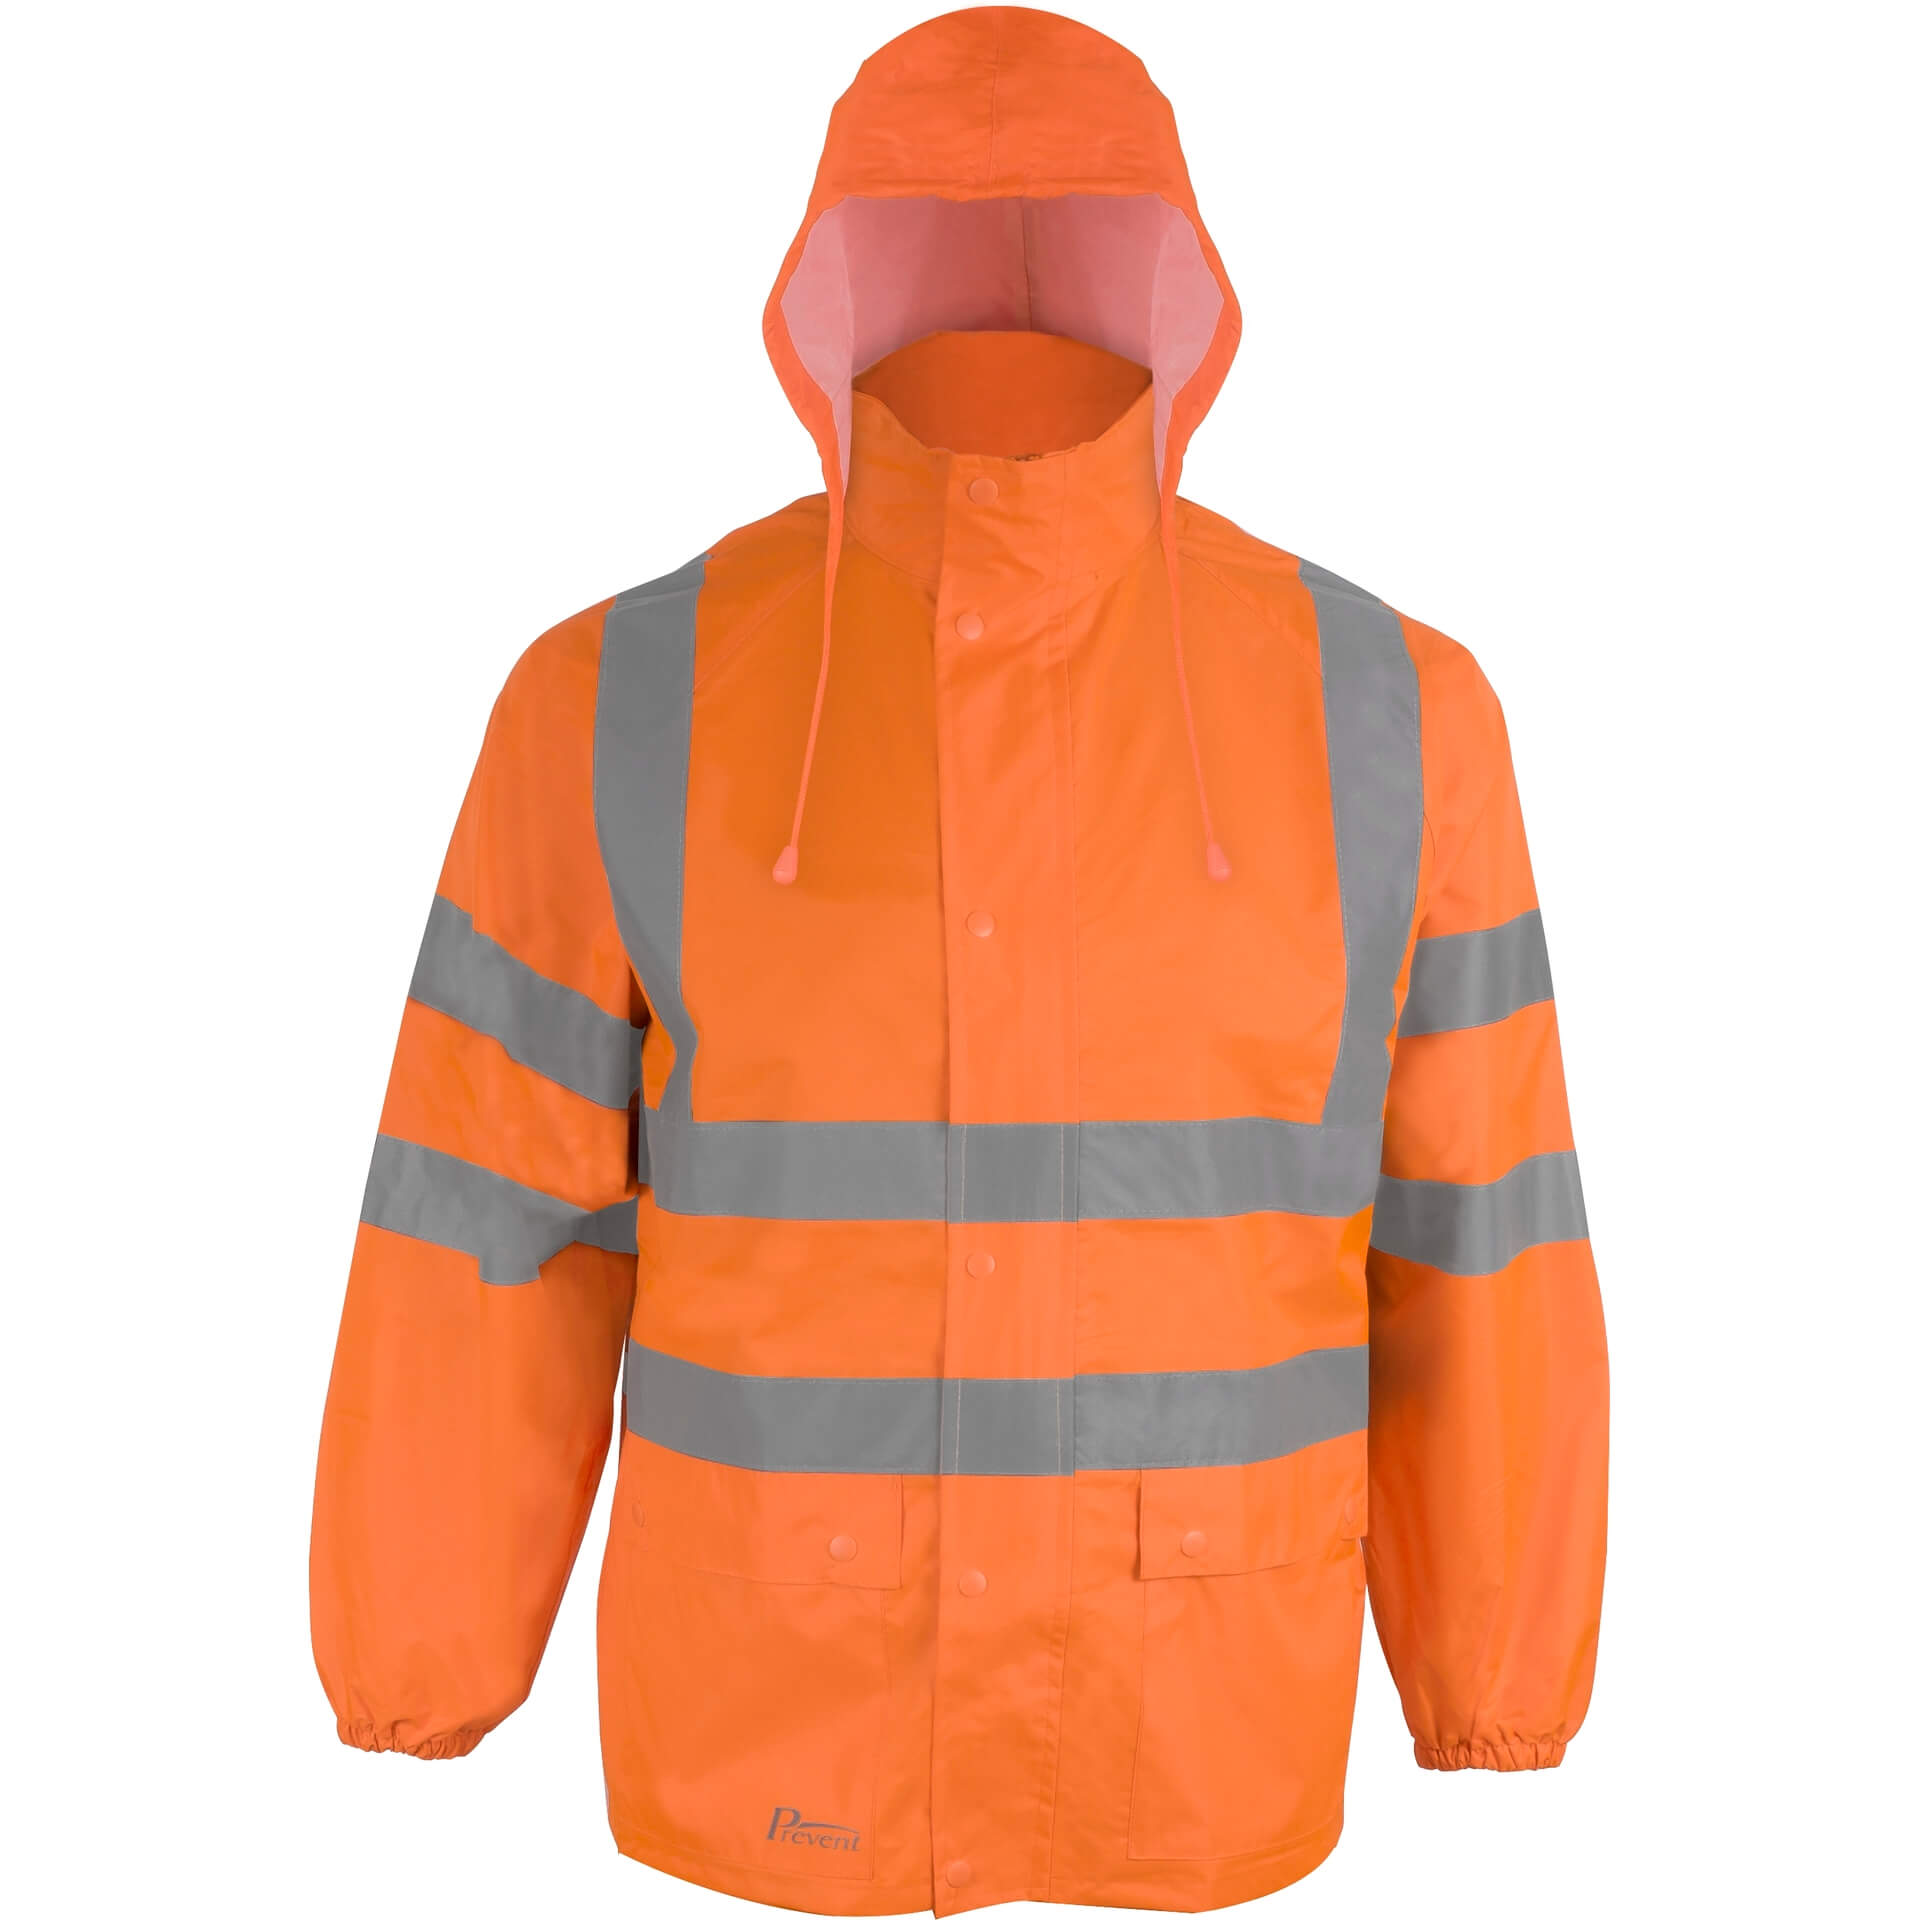 PREVENT Warnschutz-Regenbekleidung 